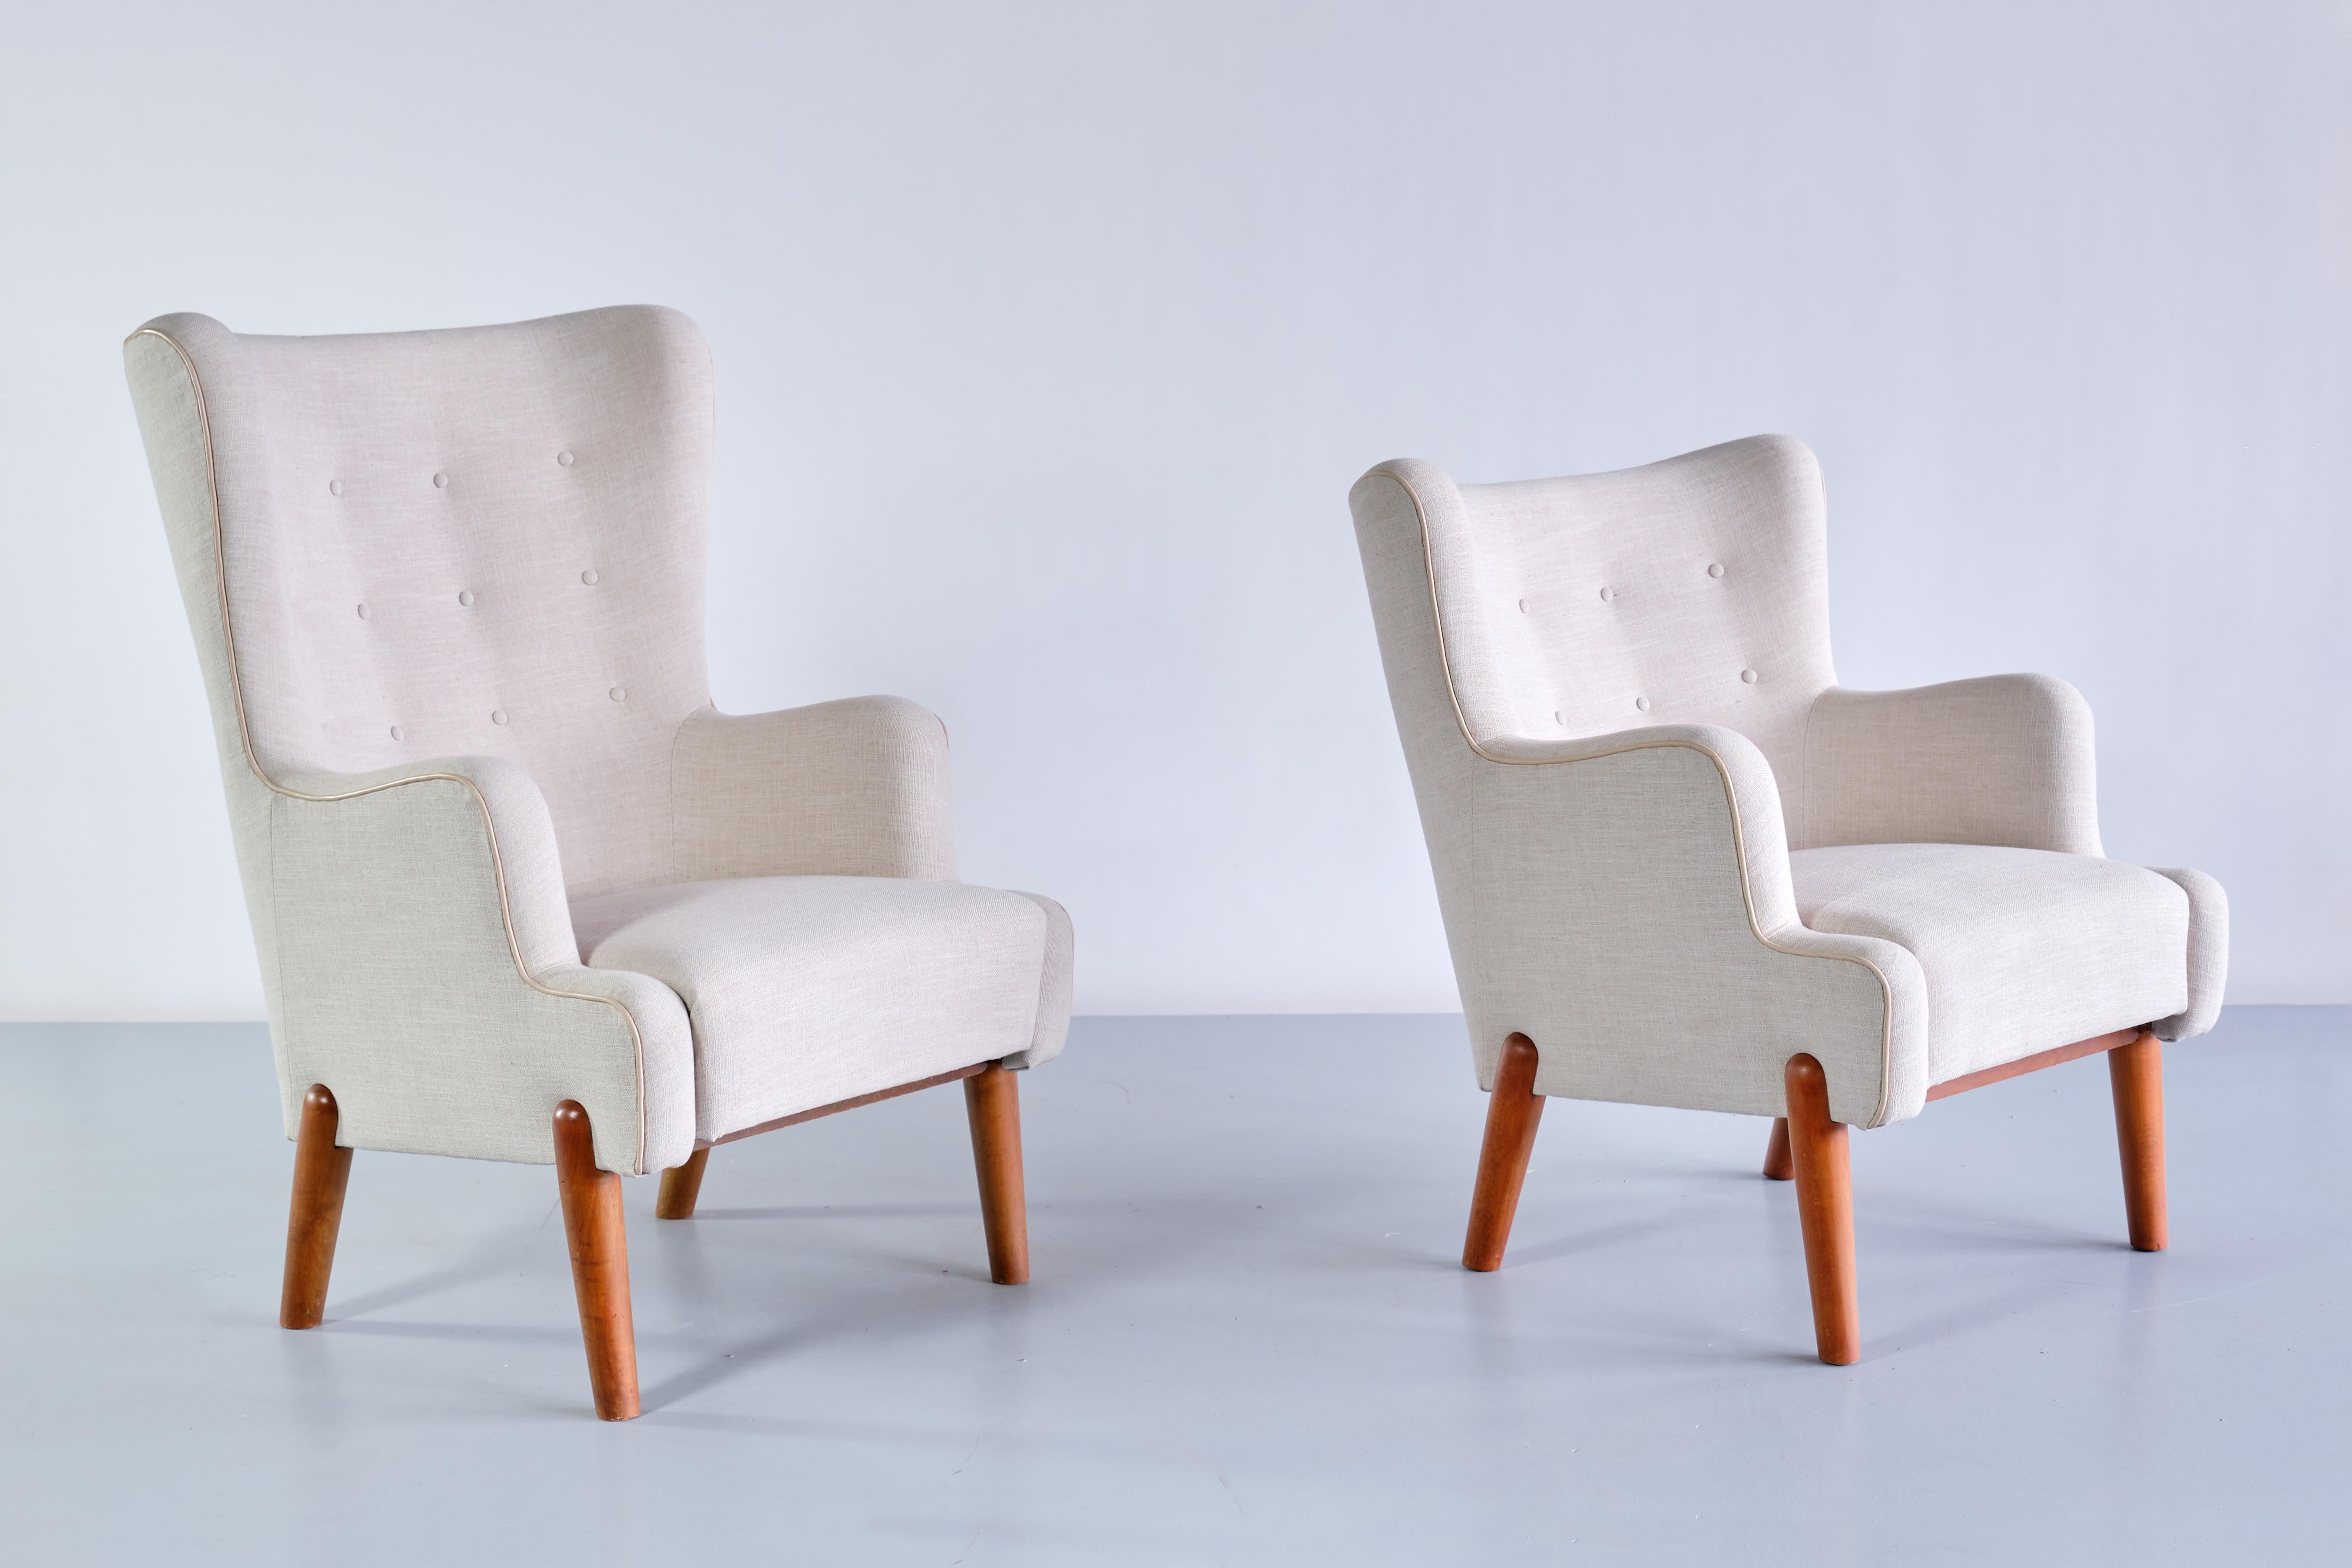 Cette paire de fauteuils rares a été conçue par Eva et Nils Koppel et produite par Slagelse Møbelværk au Danemark, dans les années 1950. Cette paire remarquable se compose d'un fauteuil à dossier haut et du même modèle à dossier bas. Le design est